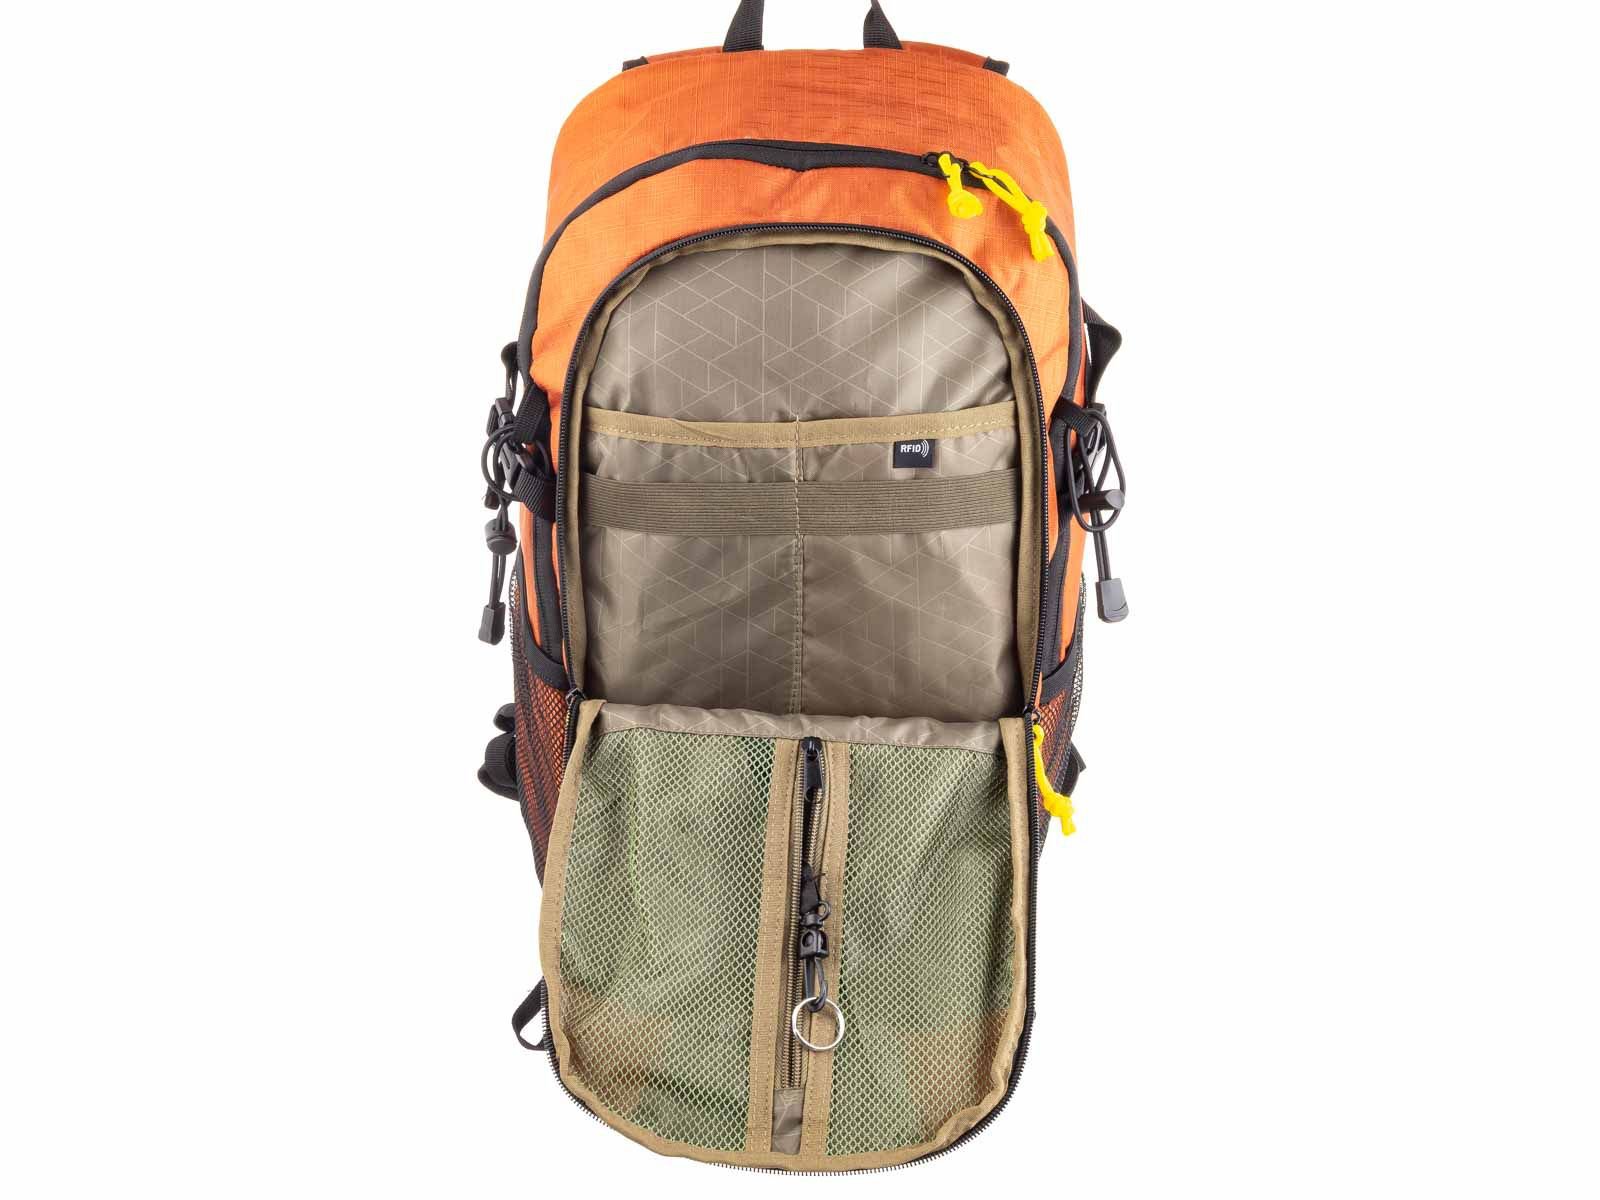 National Geographic - Destination | Outdoor Rucksack mit RFID-Blocker (48cm) | Orange